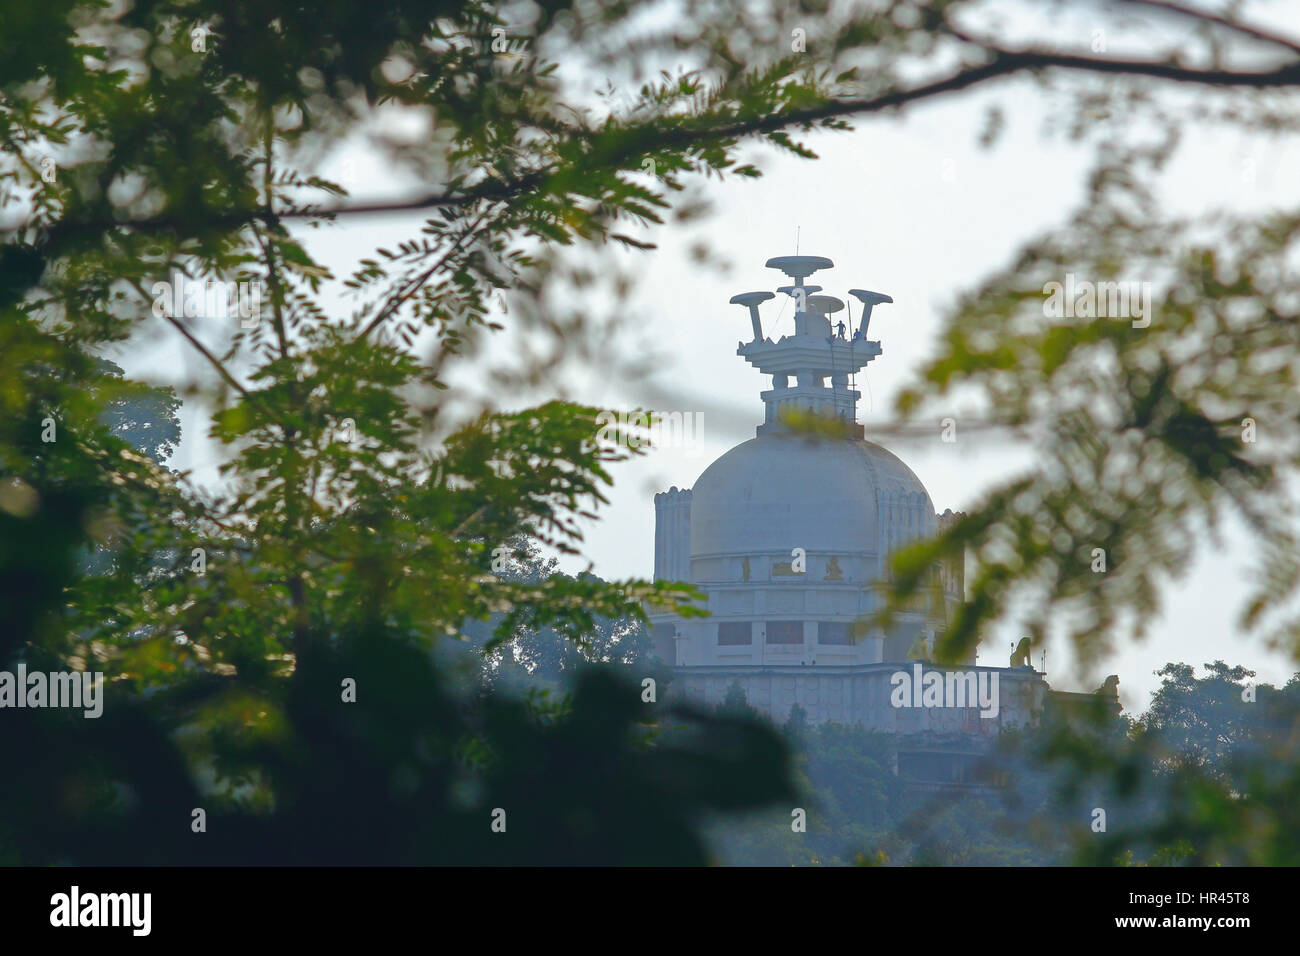 Le matin long view de Bouddhiste, dhauligiri lieu touristique, bhubaneswar odisha Banque D'Images